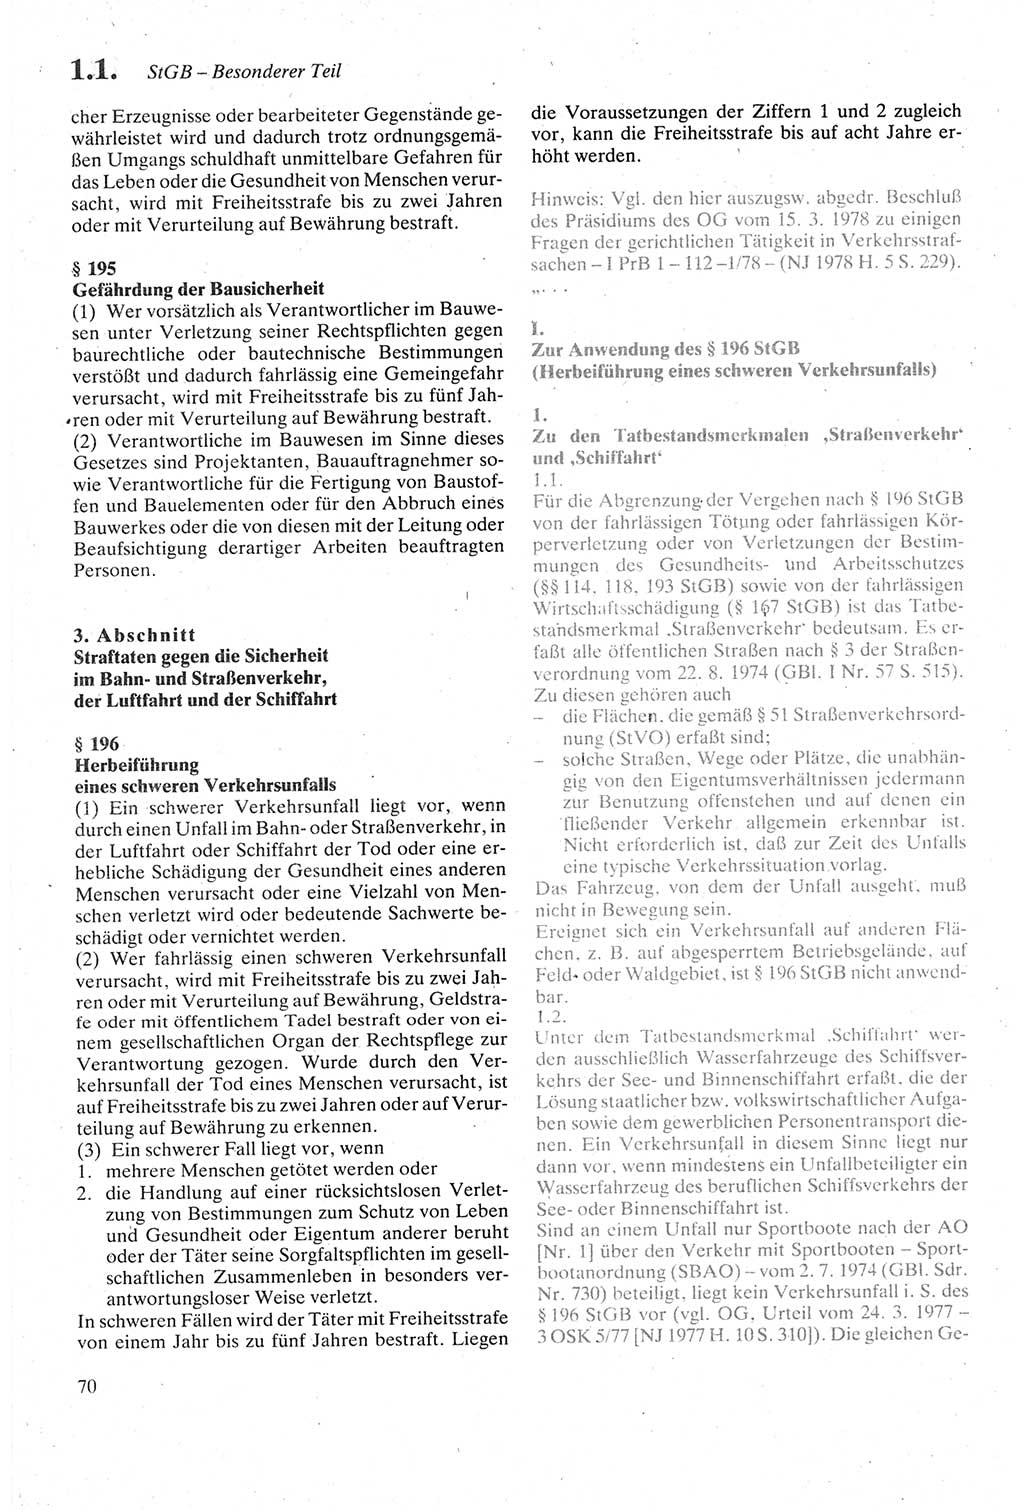 Strafgesetzbuch (StGB) der Deutschen Demokratischen Republik (DDR) sowie angrenzende Gesetze und Bestimmungen 1979, Seite 70 (StGB DDR Ges. Best. 1979, S. 70)